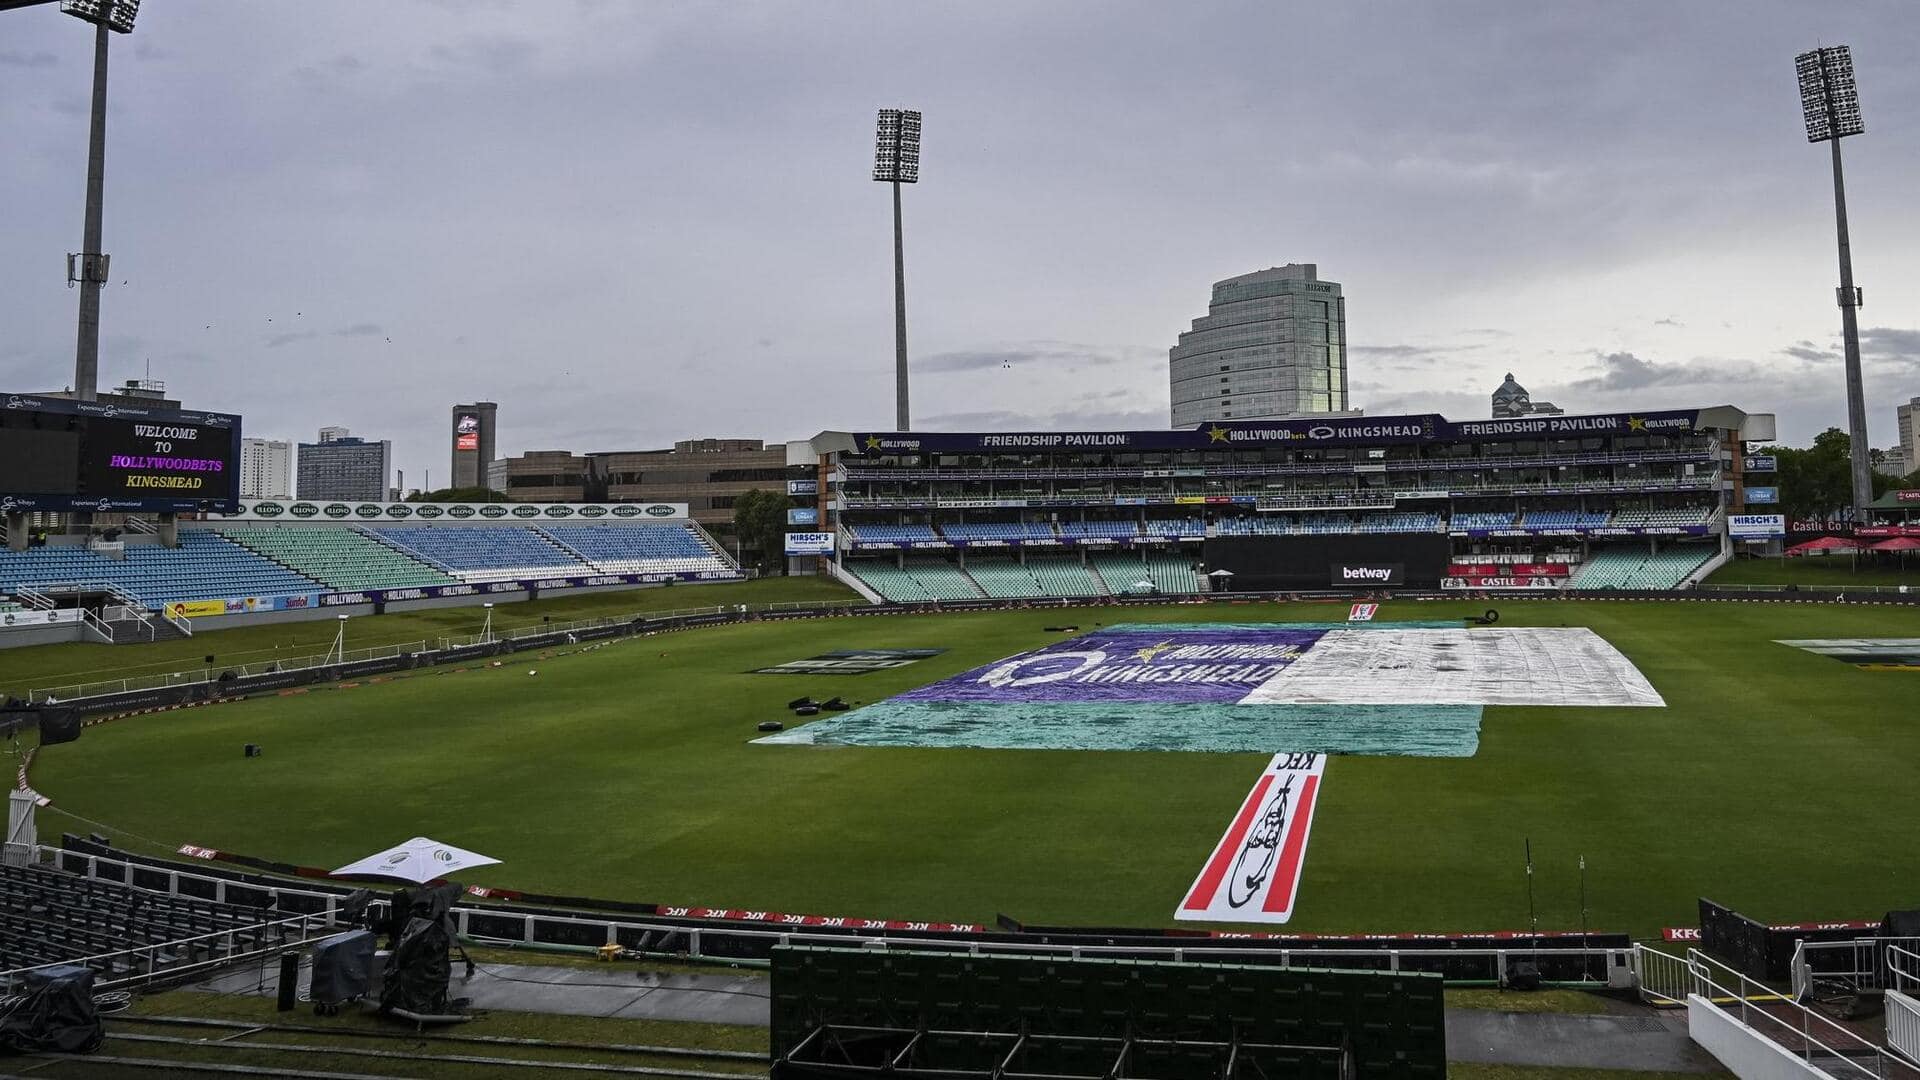 दक्षिण अफ्रीका बनाम भारत: बारिश में धुला पहला टी-20 मुकाबला, मंगलवार को होगा दूसरा मैच